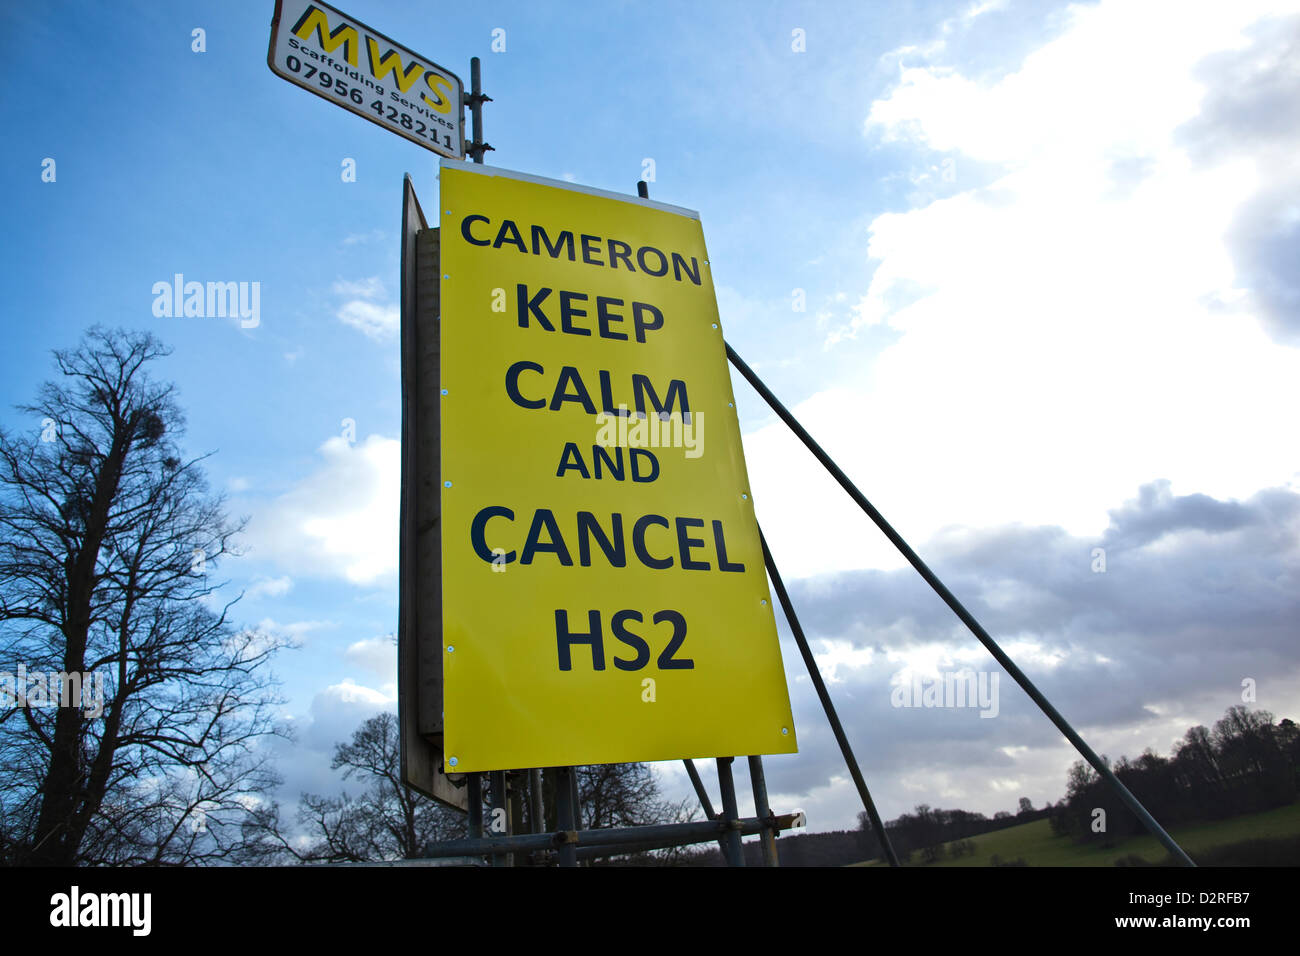 High-Speed Rail (HS2) Amersham, Buckinghamshire, England. 31.01.2013 haben Aktivisten vertreten "Stop HS2" Aufmachungen Zeichen am A413 Straßenrand Aufruf für die vorgeschlagenen 2 Tunnel Hochgeschwindigkeitsnetz laufen durch die Landschaft gestoppt werden, mit zunehmender Widerstand in Chilton Bezirk von Buckinghamshire. Stockfoto